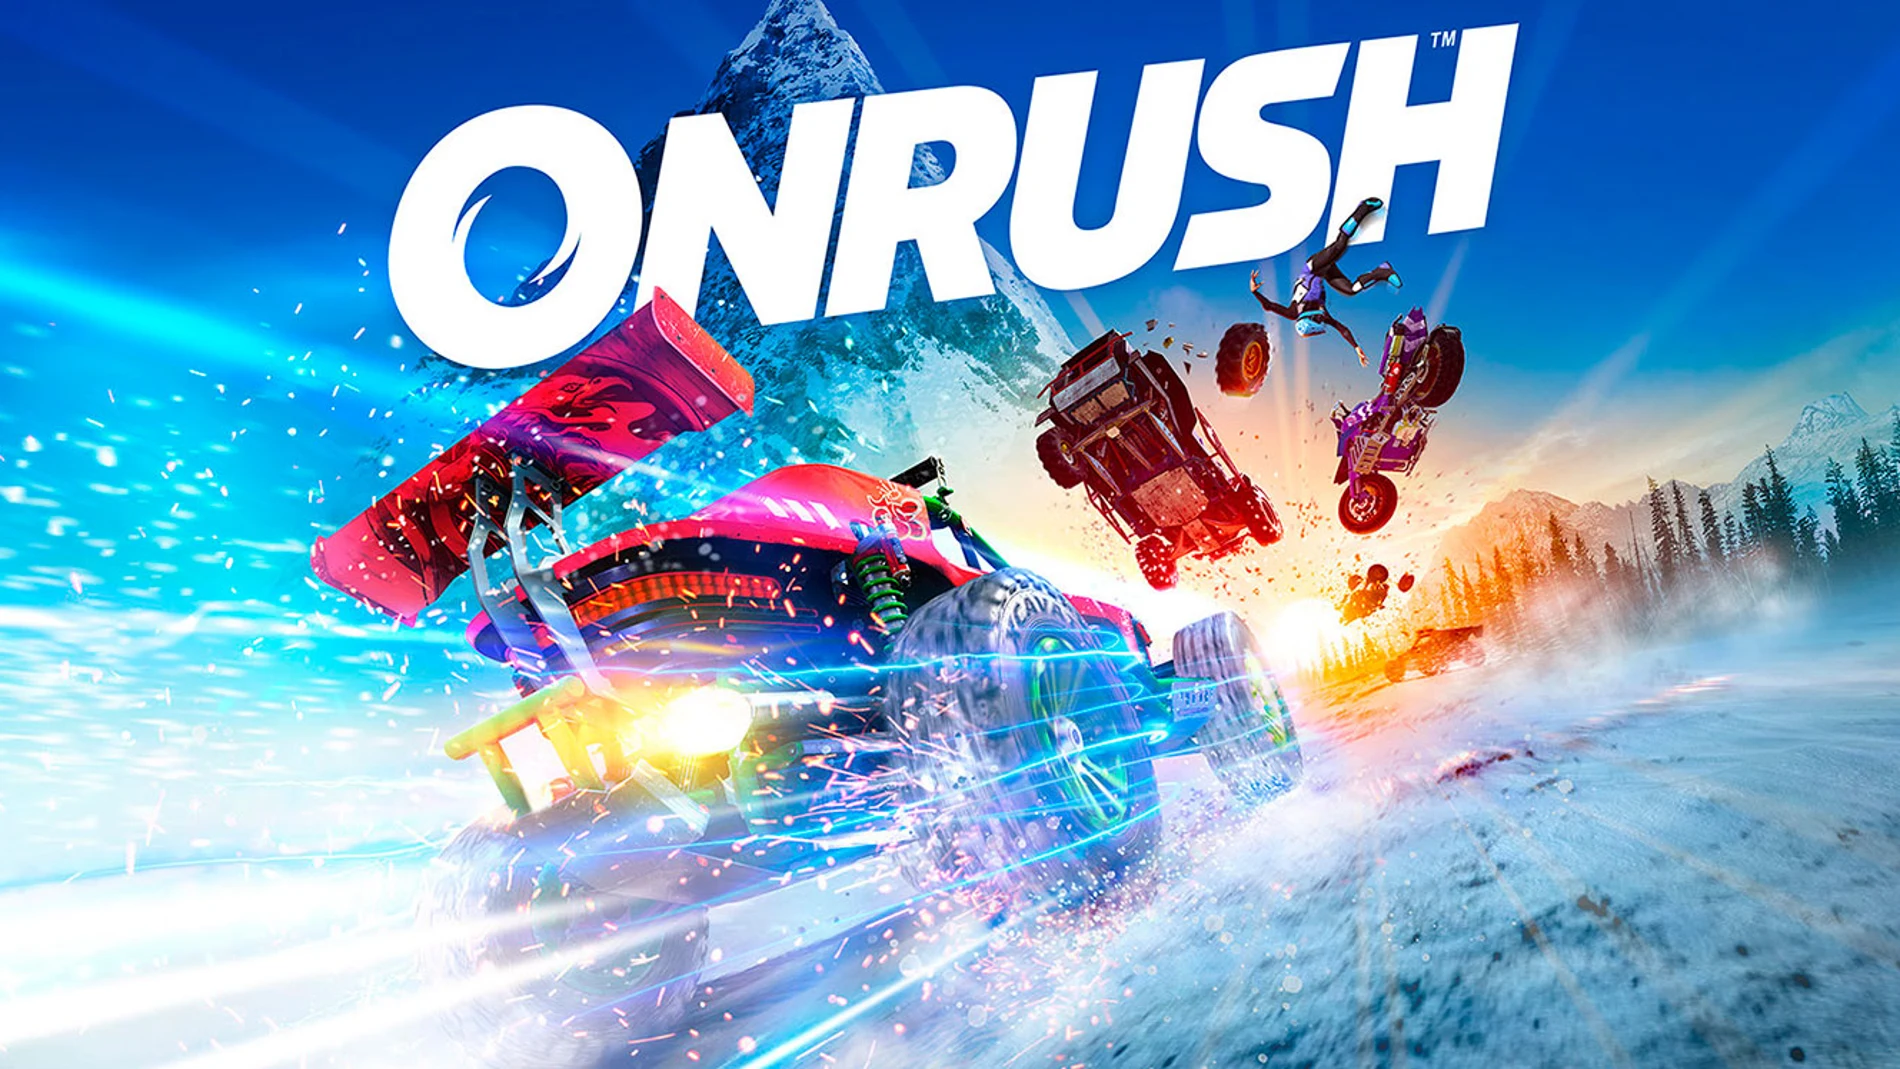 Onrush, un juego de carreras arcade desarrollado por Codemasters